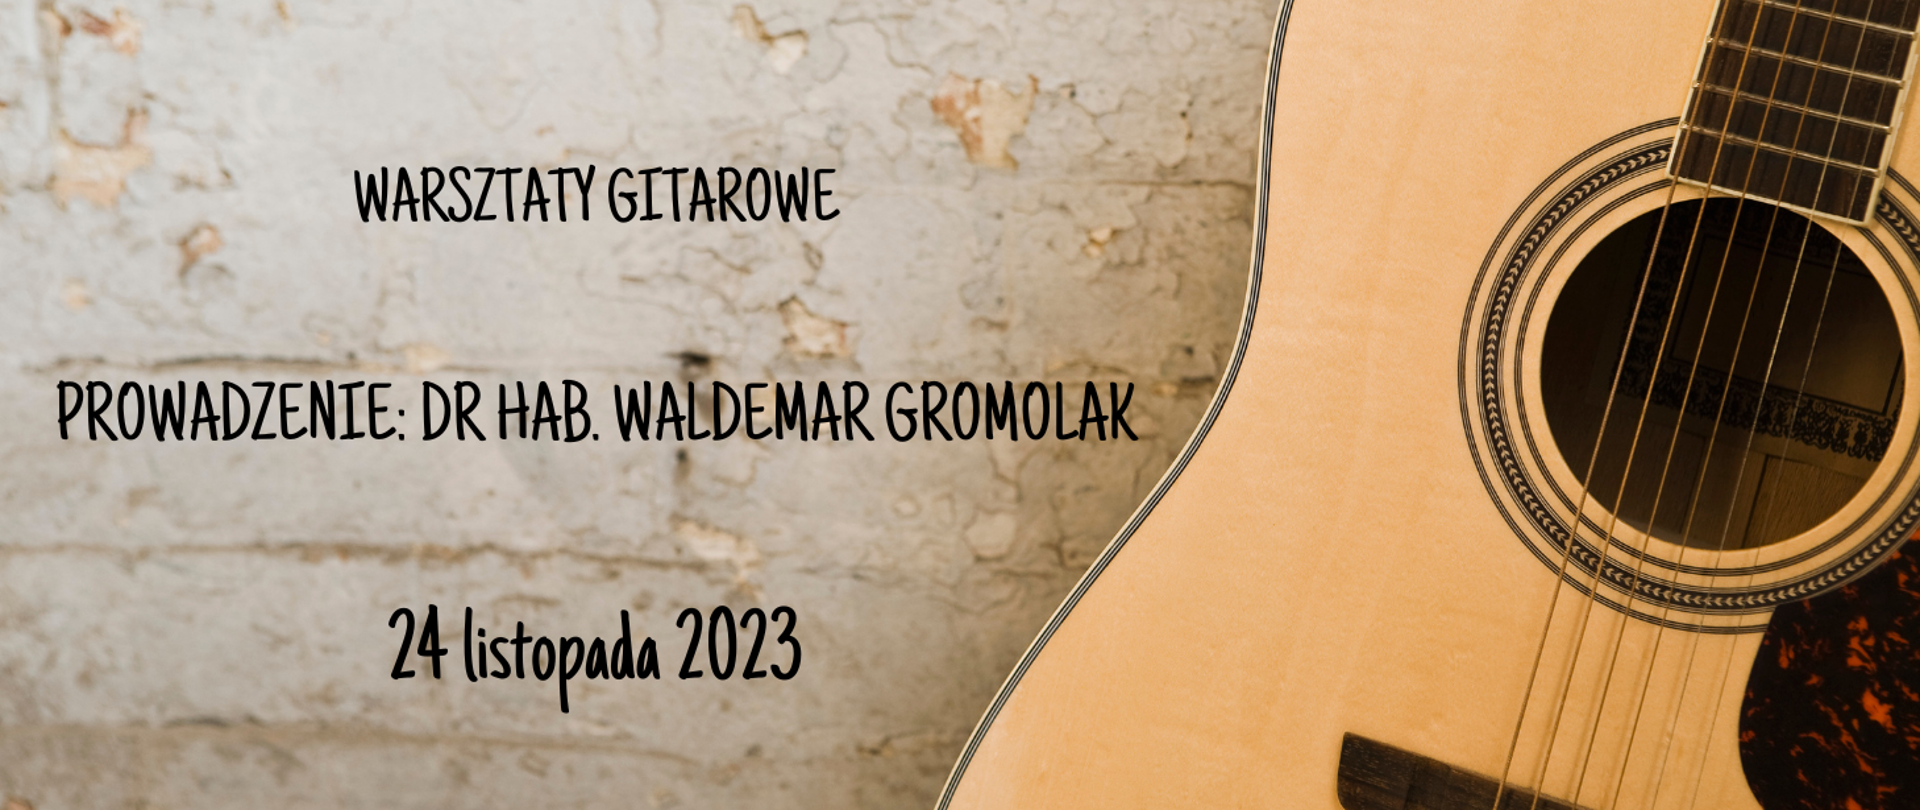 Na tle ściany z prawej strony gitara, zlewej strony tekst w kolorze czarnym "warsztaty gitarowe, prowadzenie: dr hab. Waldemar Gromolak, 24 listopada 2023".